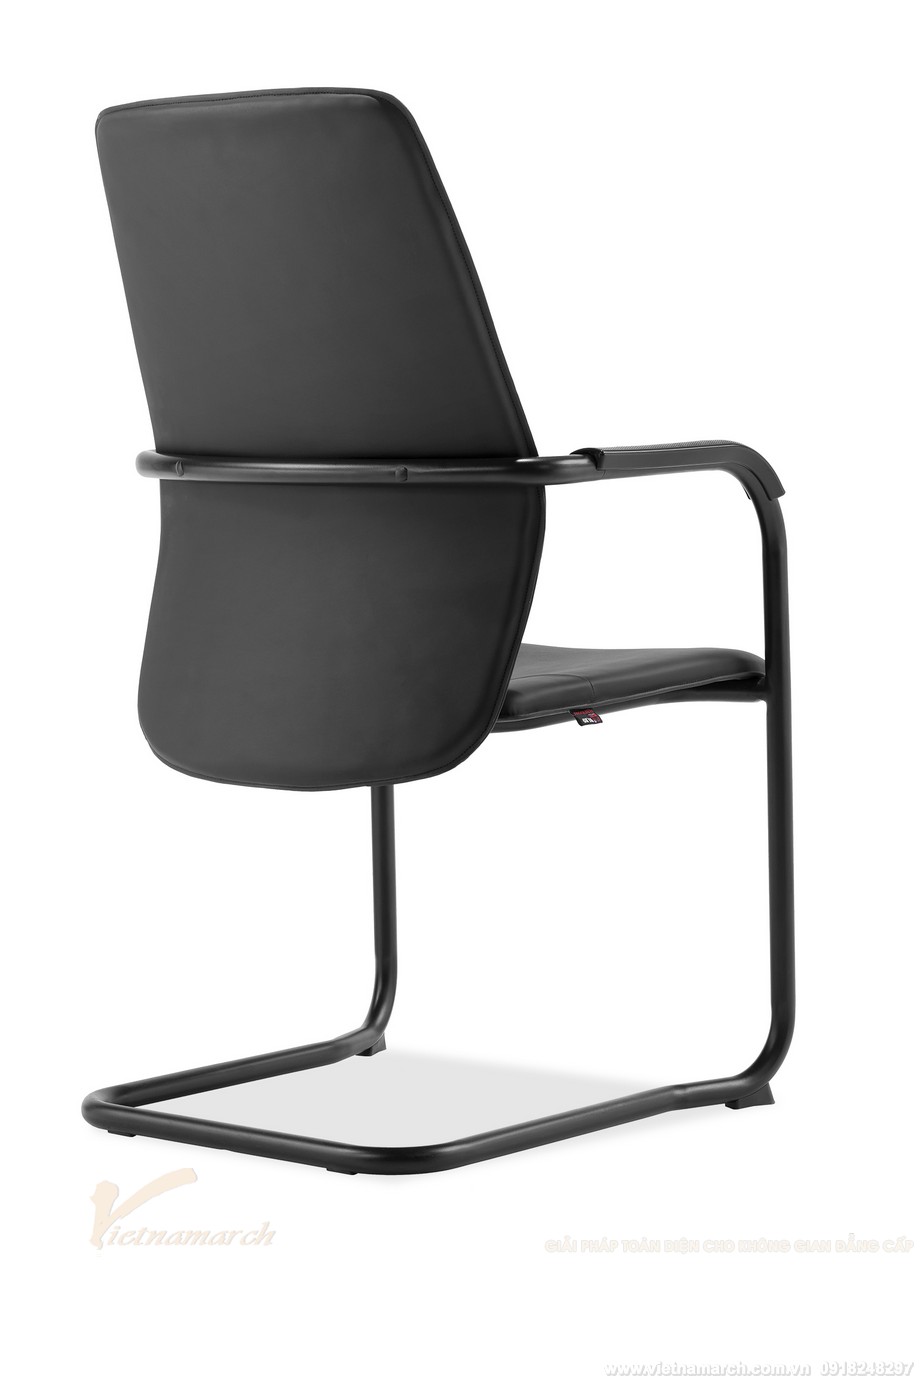 Mẫu ghế văn phòng chân quỳ cho phòng họp đơn giản hiện đại: B252BH > Ghế mầu đen ấn tượng cho văn phòng